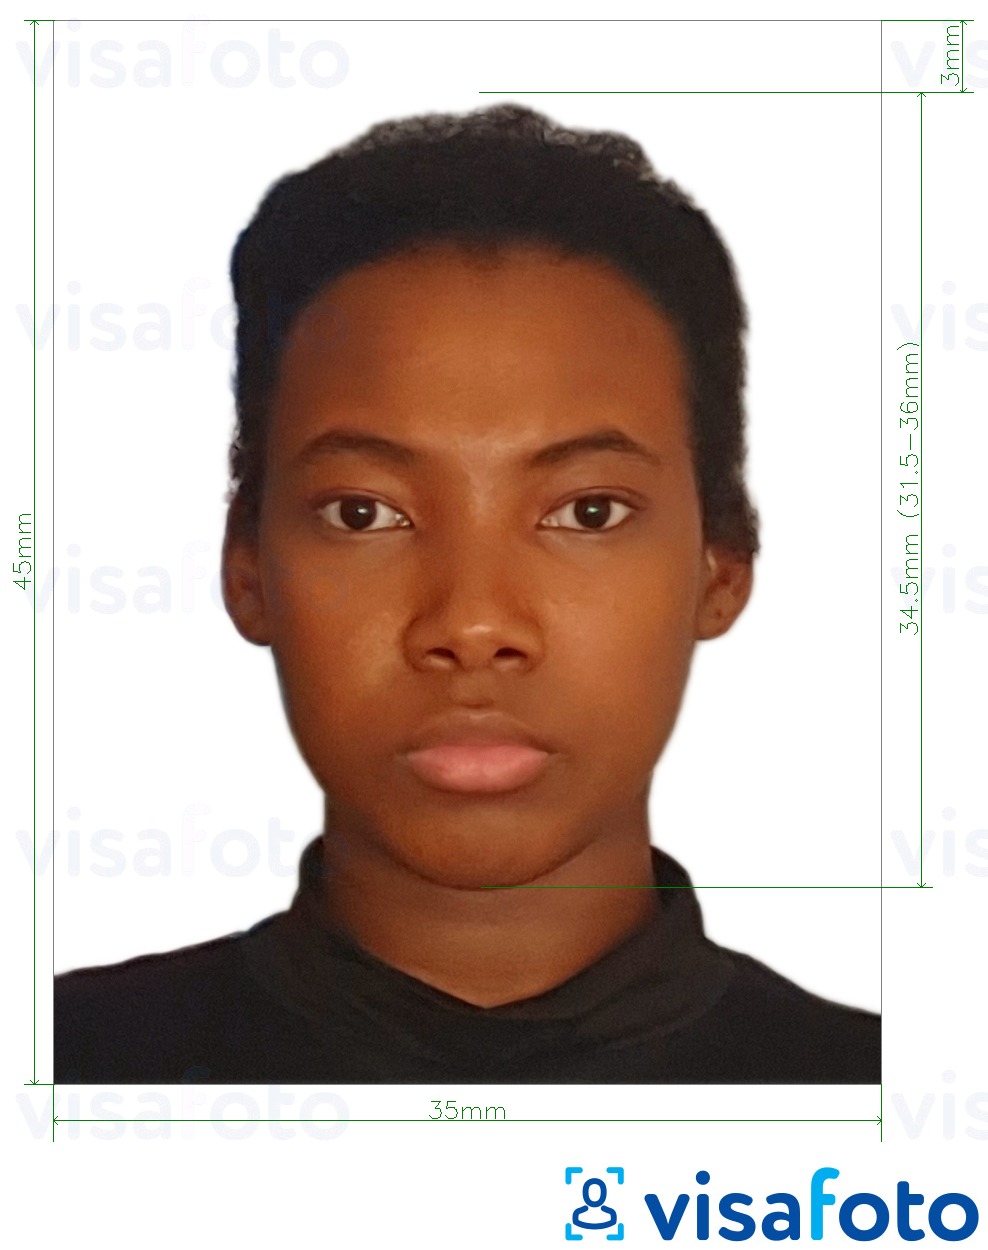 Primjer fotografije za Nigeria visa 3,5x4,5 cm (35x45 mm) s točno određenom veličinom